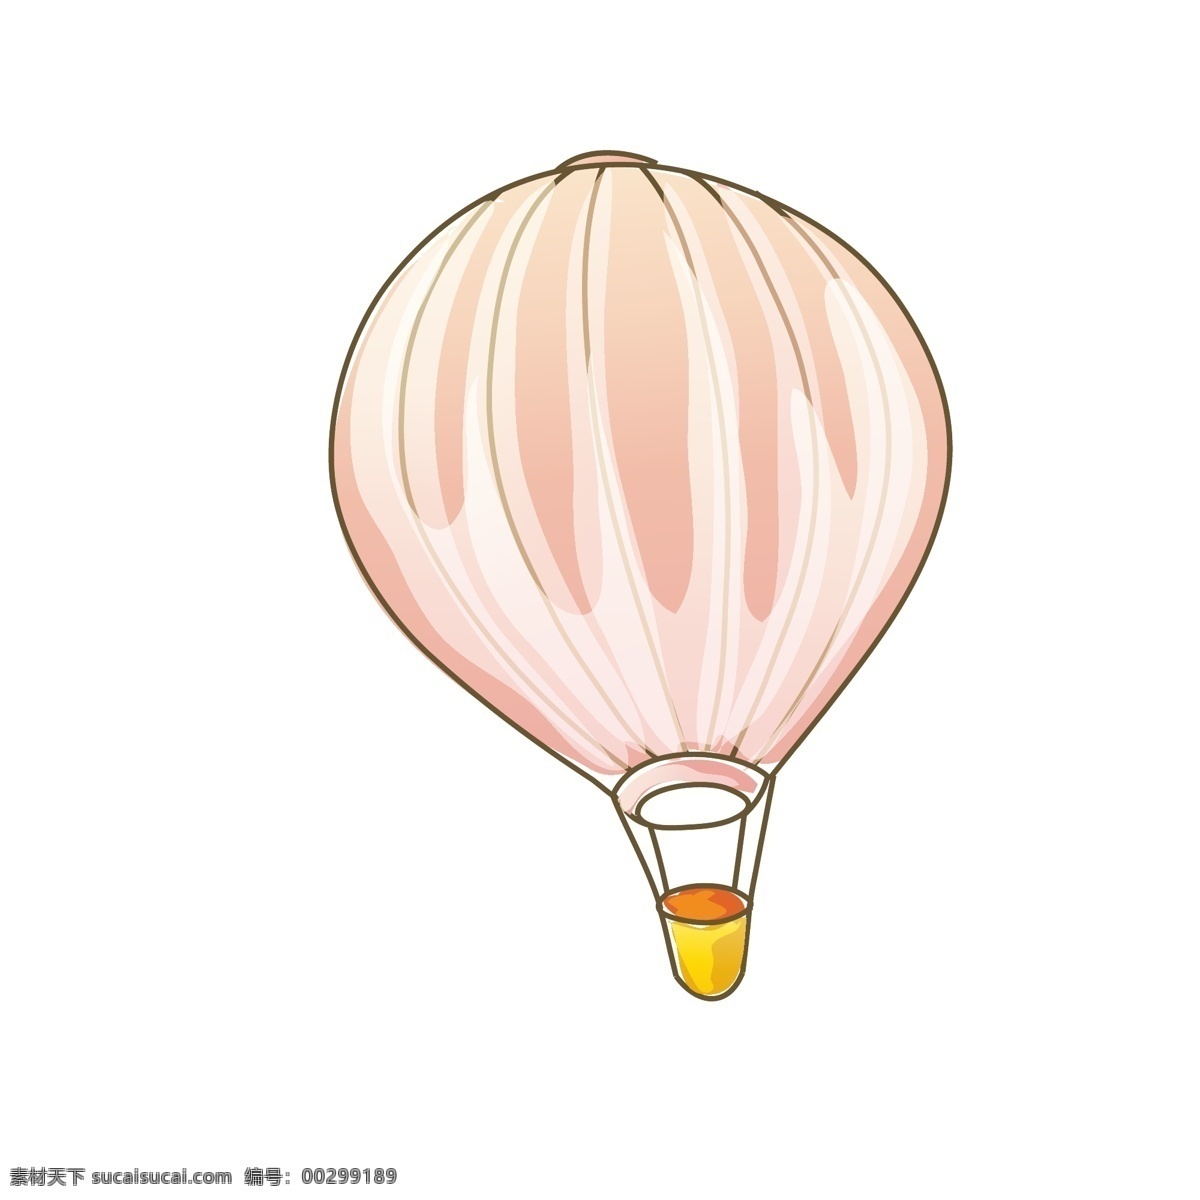 唯美 卡通 矢量 手绘 热气球 矢量热气球 卡通热气球 手绘热气球 装饰图 装饰 通用装饰图 淘宝装饰 天猫装饰 促销装饰图